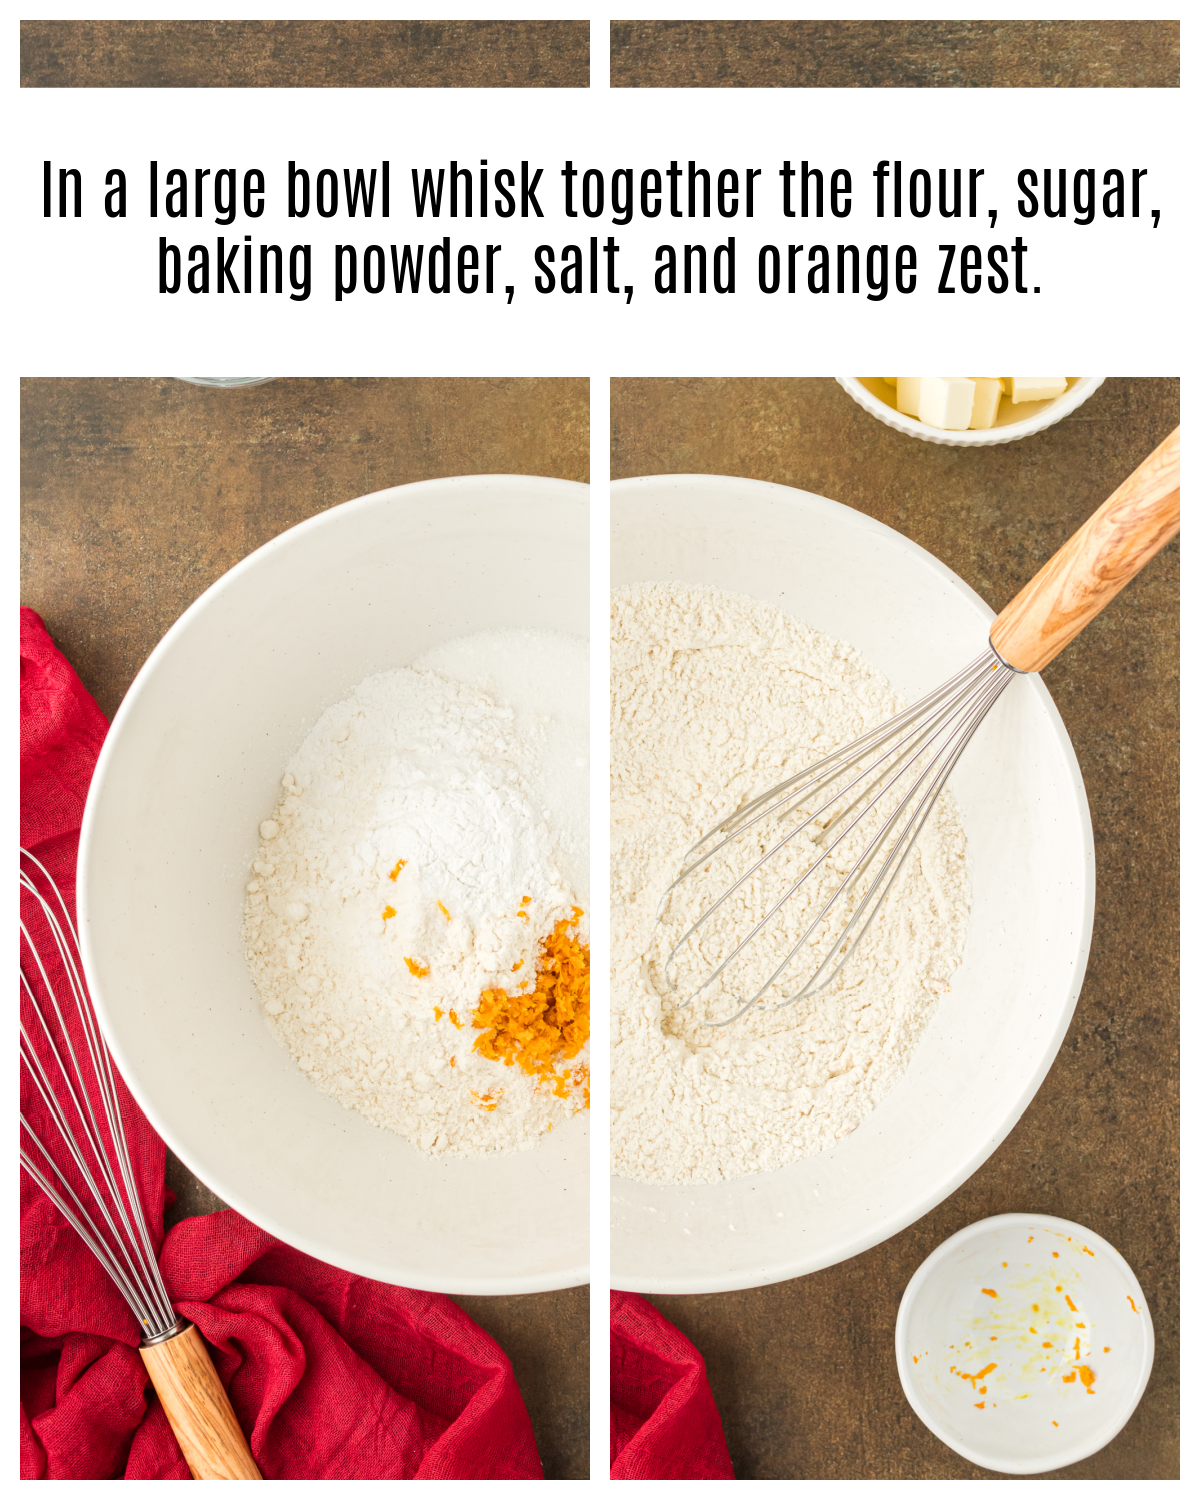 flour, sugar, baking powder, salt and orange zest whisked together in bowl